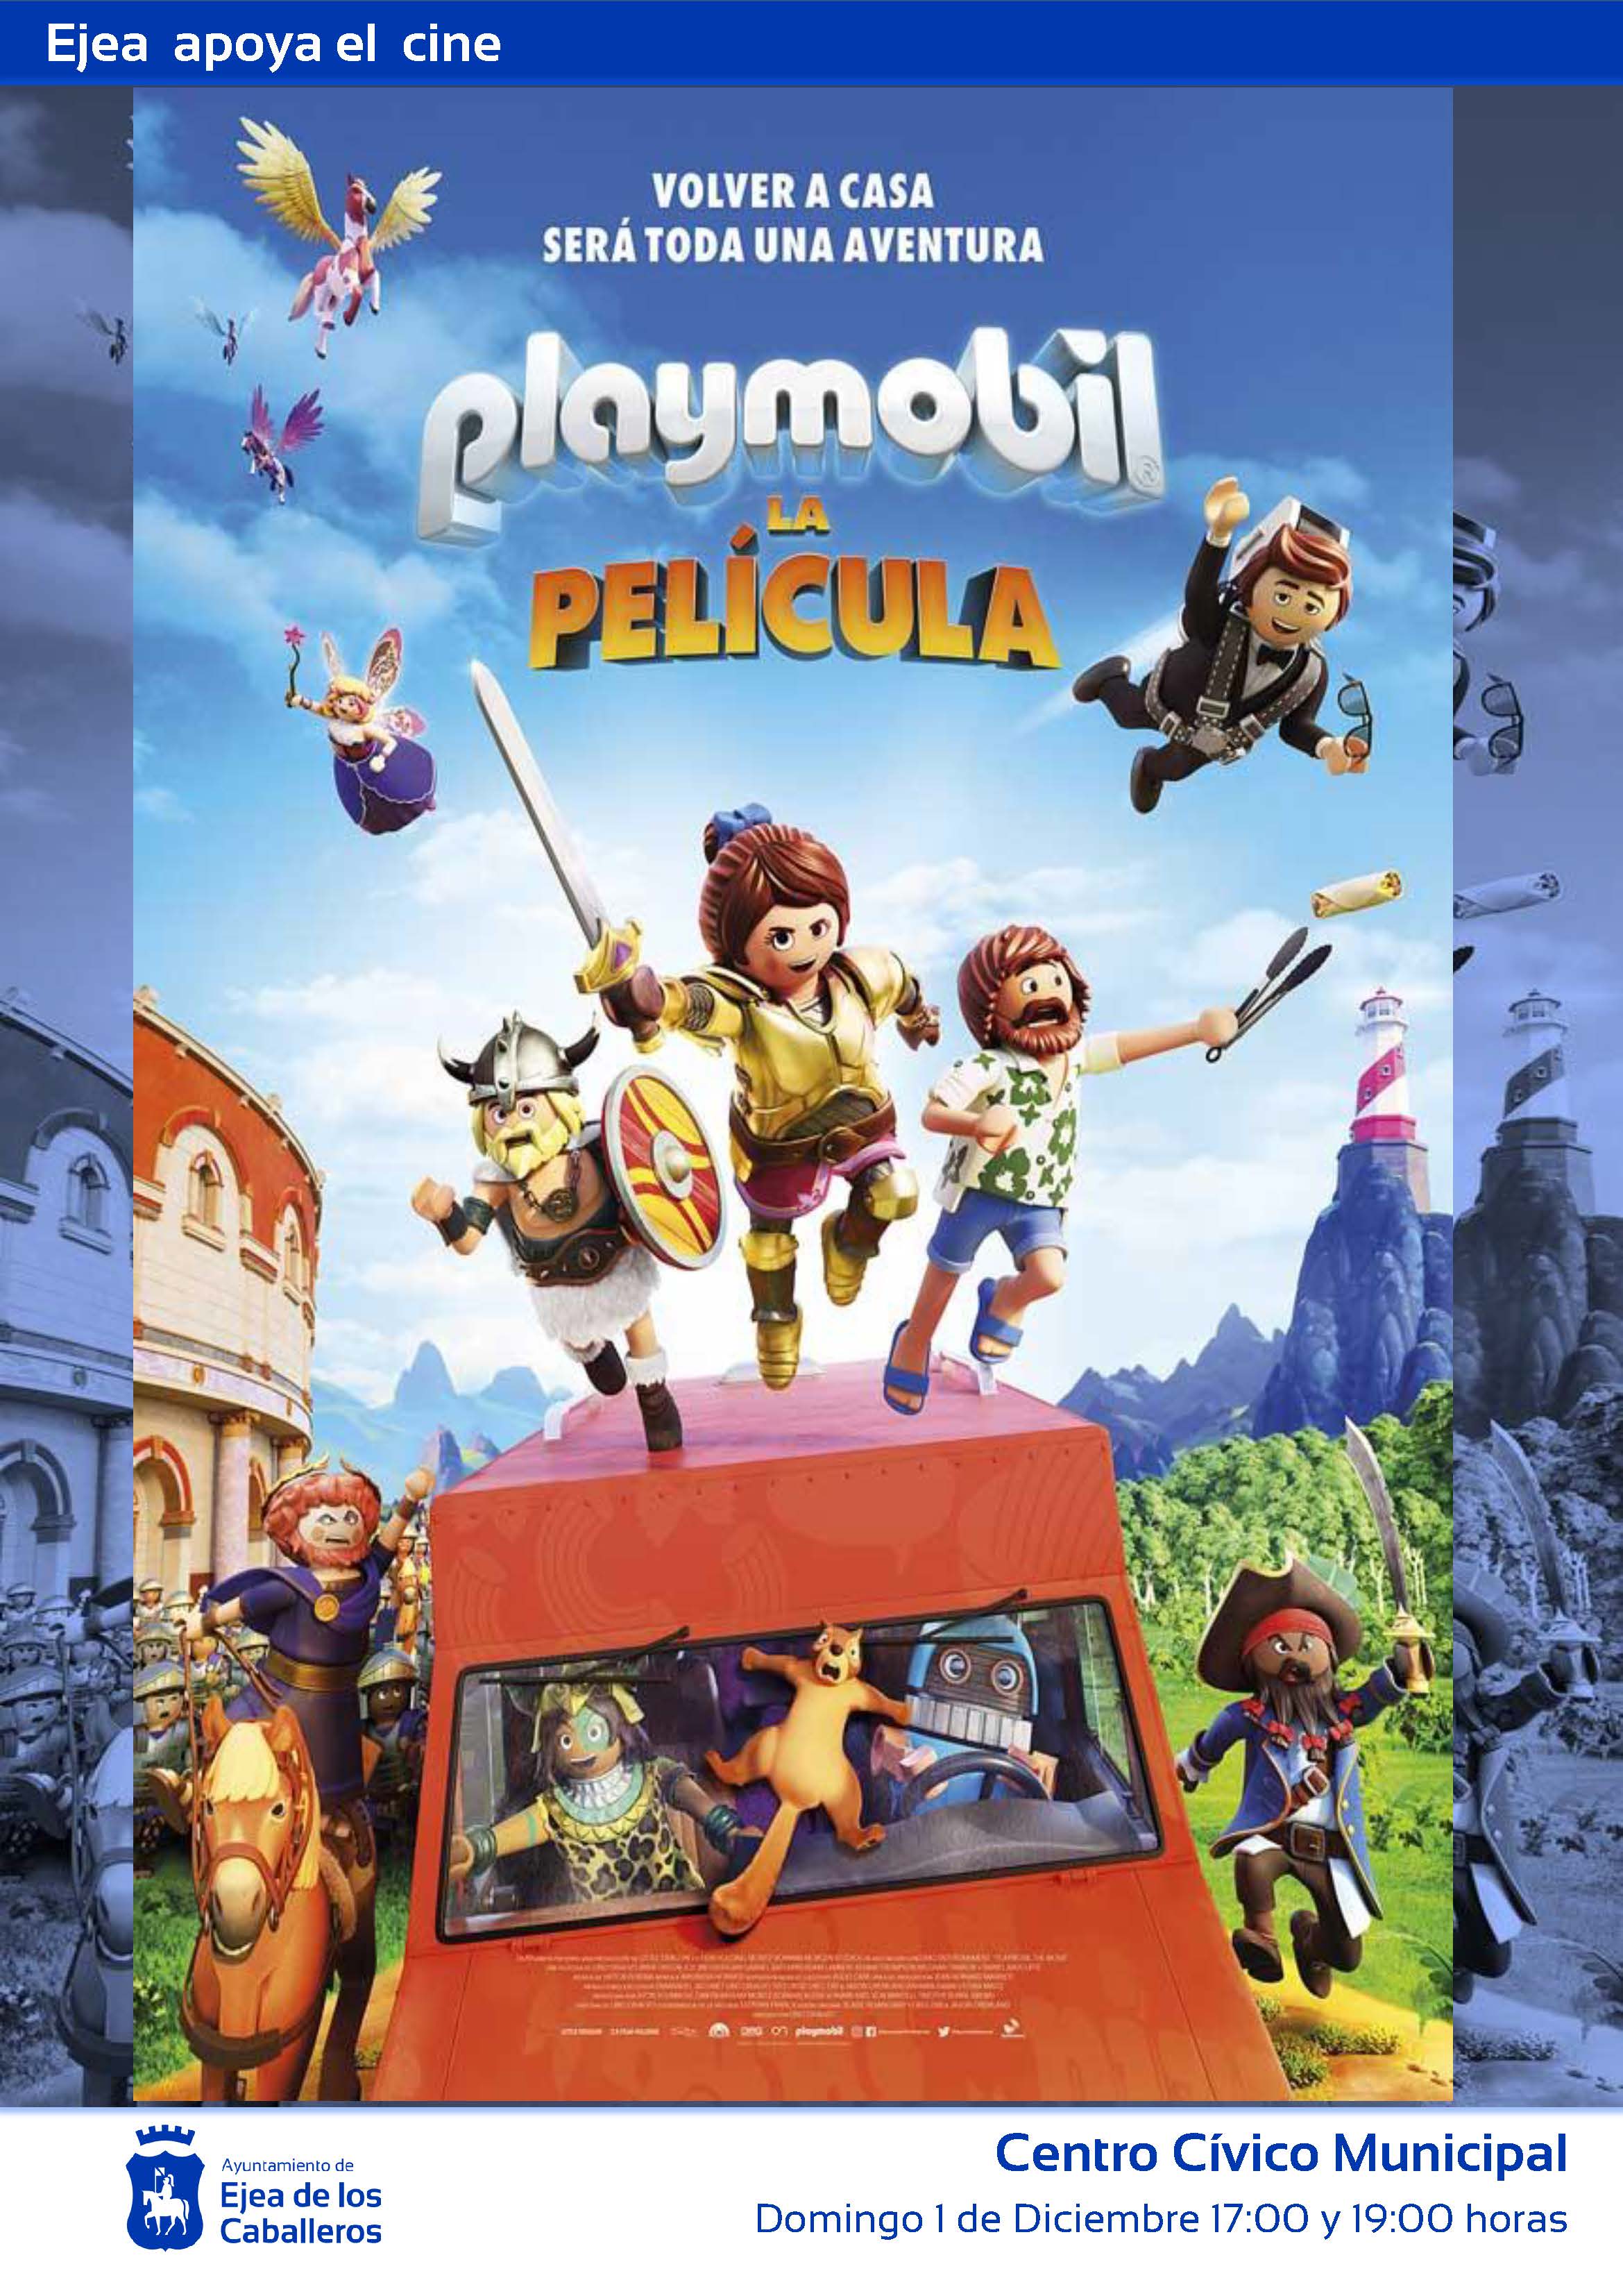 En este momento estás viendo Ejea apoya el cine: “Playmobil”, una película de animación y aventuras con los famosos juguetes de protagonistas